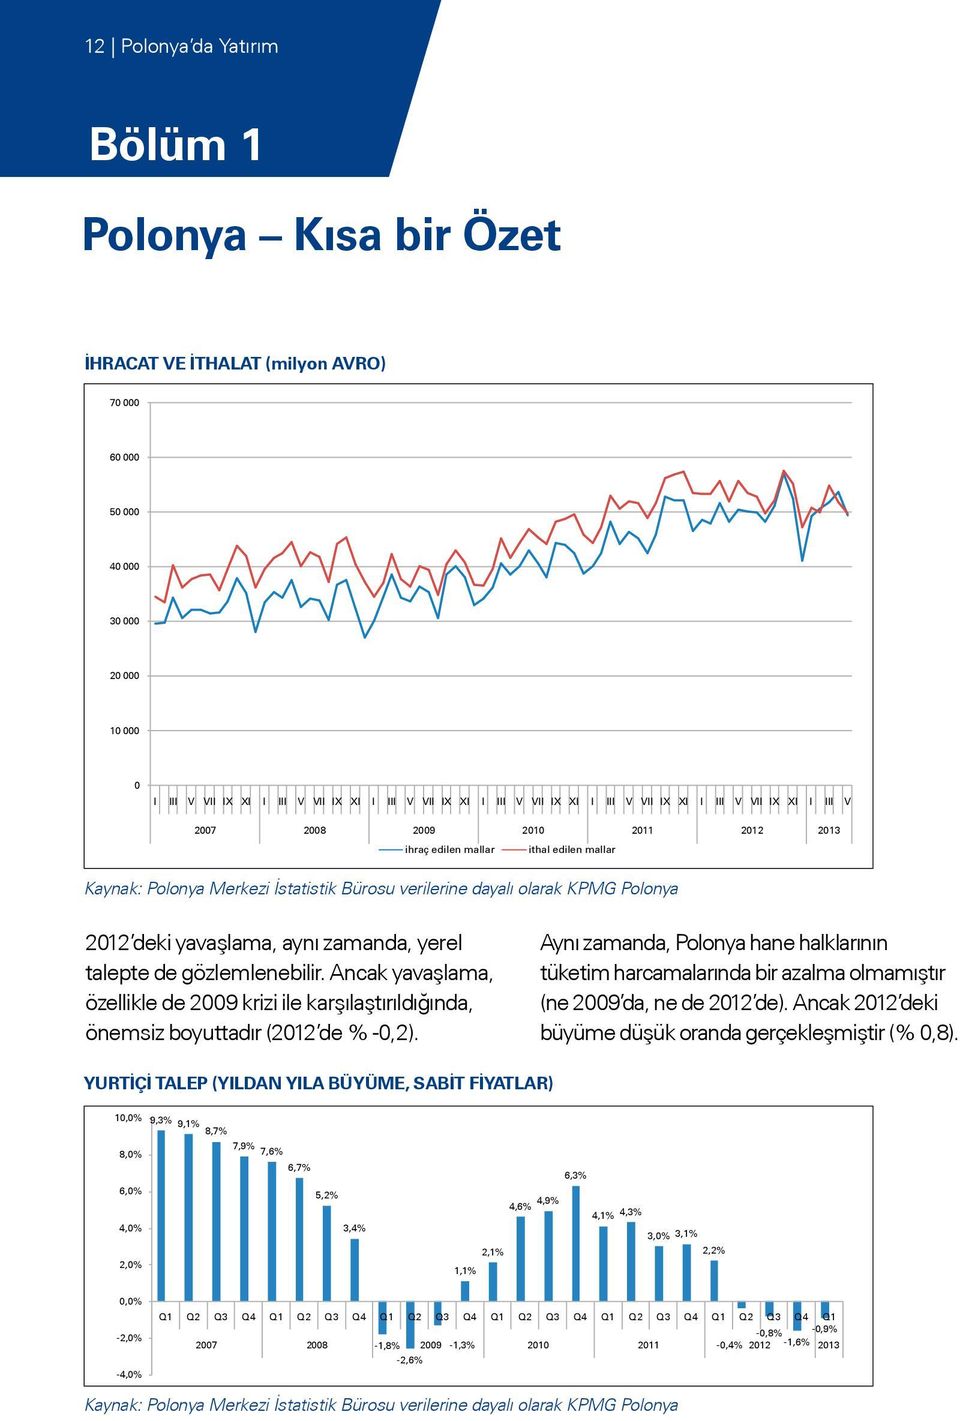 KPMG Polonya 2012 deki yavaşlama, aynı zamanda, yerel talepte de gözlemlenebilir. Ancak yavaşlama, özellikle de 2009 krizi ile karşılaştırıldığında, önemsiz boyuttadır (2012 de % -0,2).